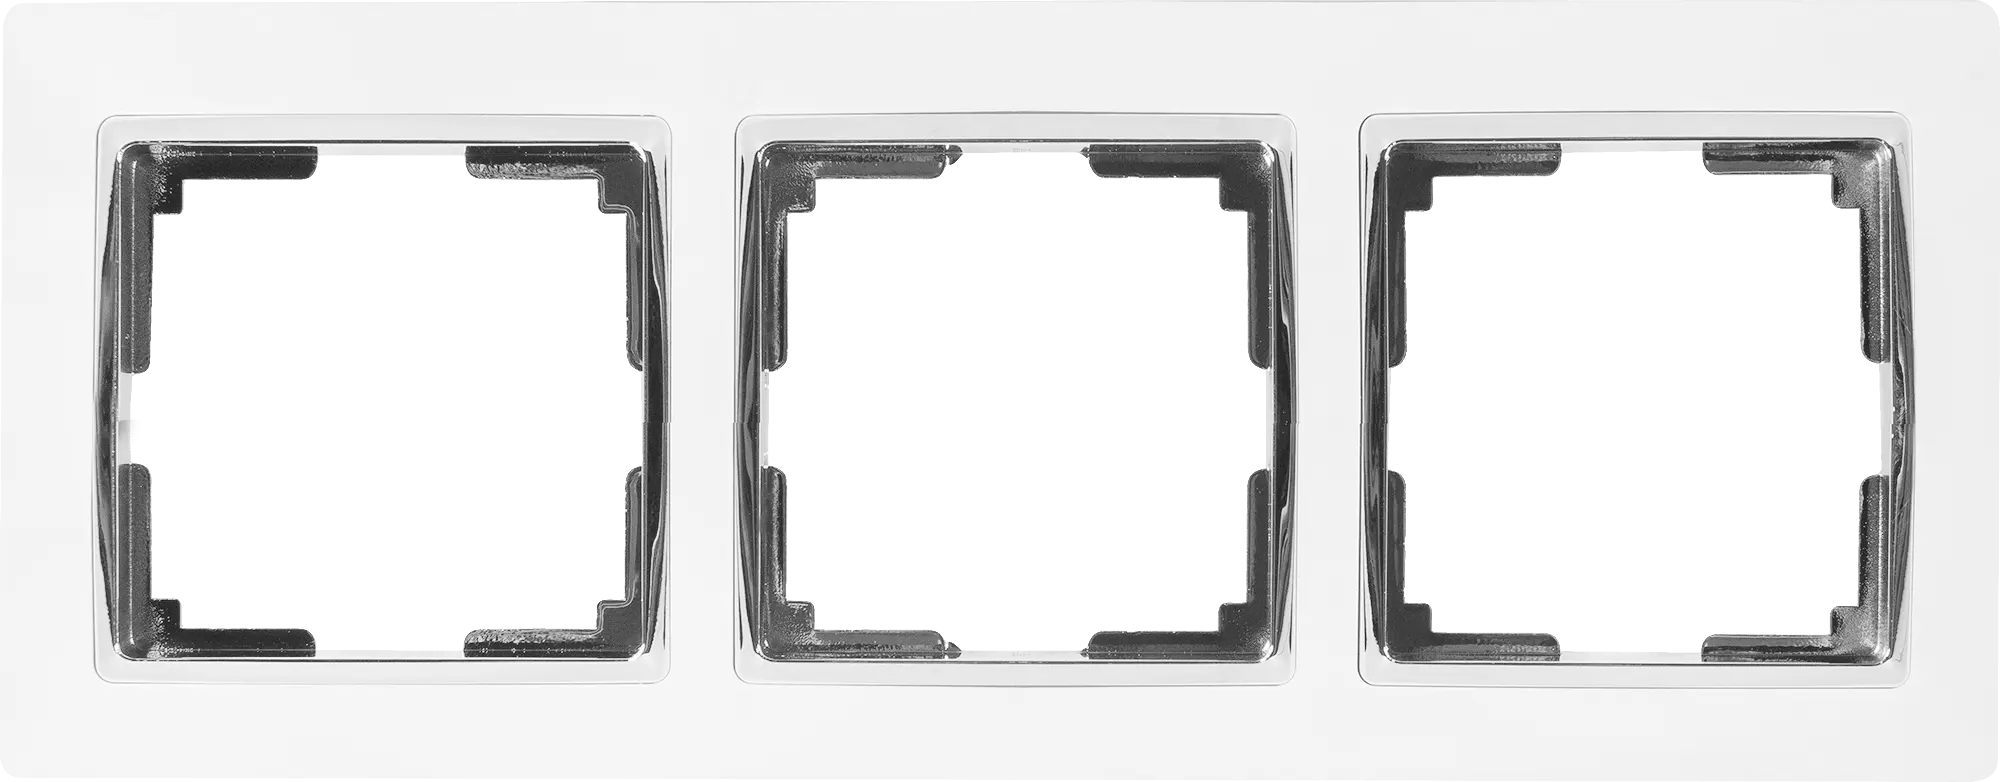 Рамка для розеток и выключателей Werkel Snabb 3 поста, цвет белый/хром рамка для розеток и выключателей werkel snabb 2 поста белый хром